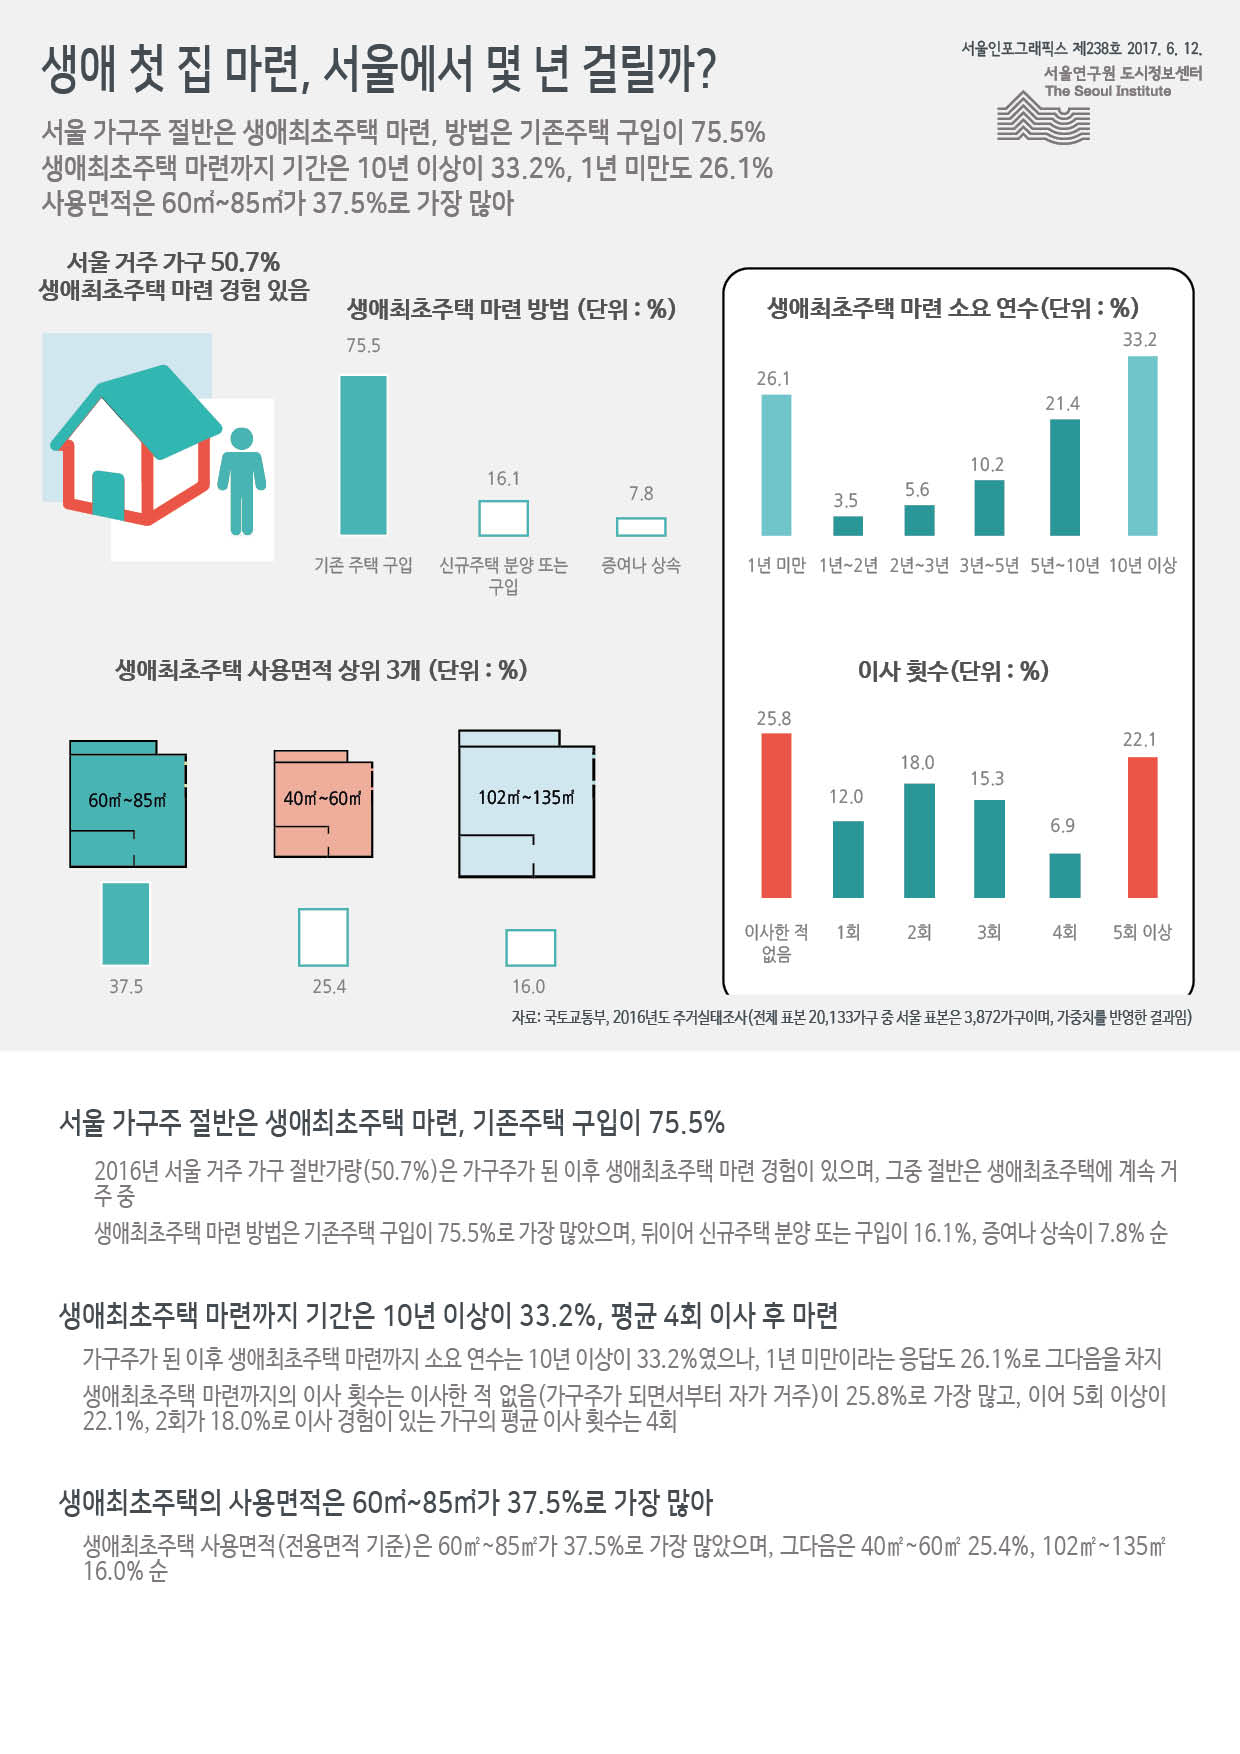 생애 첫 집 마련, 서울에서 몇 년 걸릴까? 서울인포그래픽스 제238호 2017년 6월 12일 서울 가구주 절반은 생애최초주택 마련, 방법은 기존주택 구입이 75.5%. 생애최초주택 마련까지 기간은 10년 이상이 33.2%, 1년 미만도 26.1%. 사용면적은 60㎡~85㎡가 37.5%로 가장 많음으로 정리 될 수 있습니다. 인포그래픽으로 제공되는 그래픽은 하단에 표로 자세히 제공됩니다.